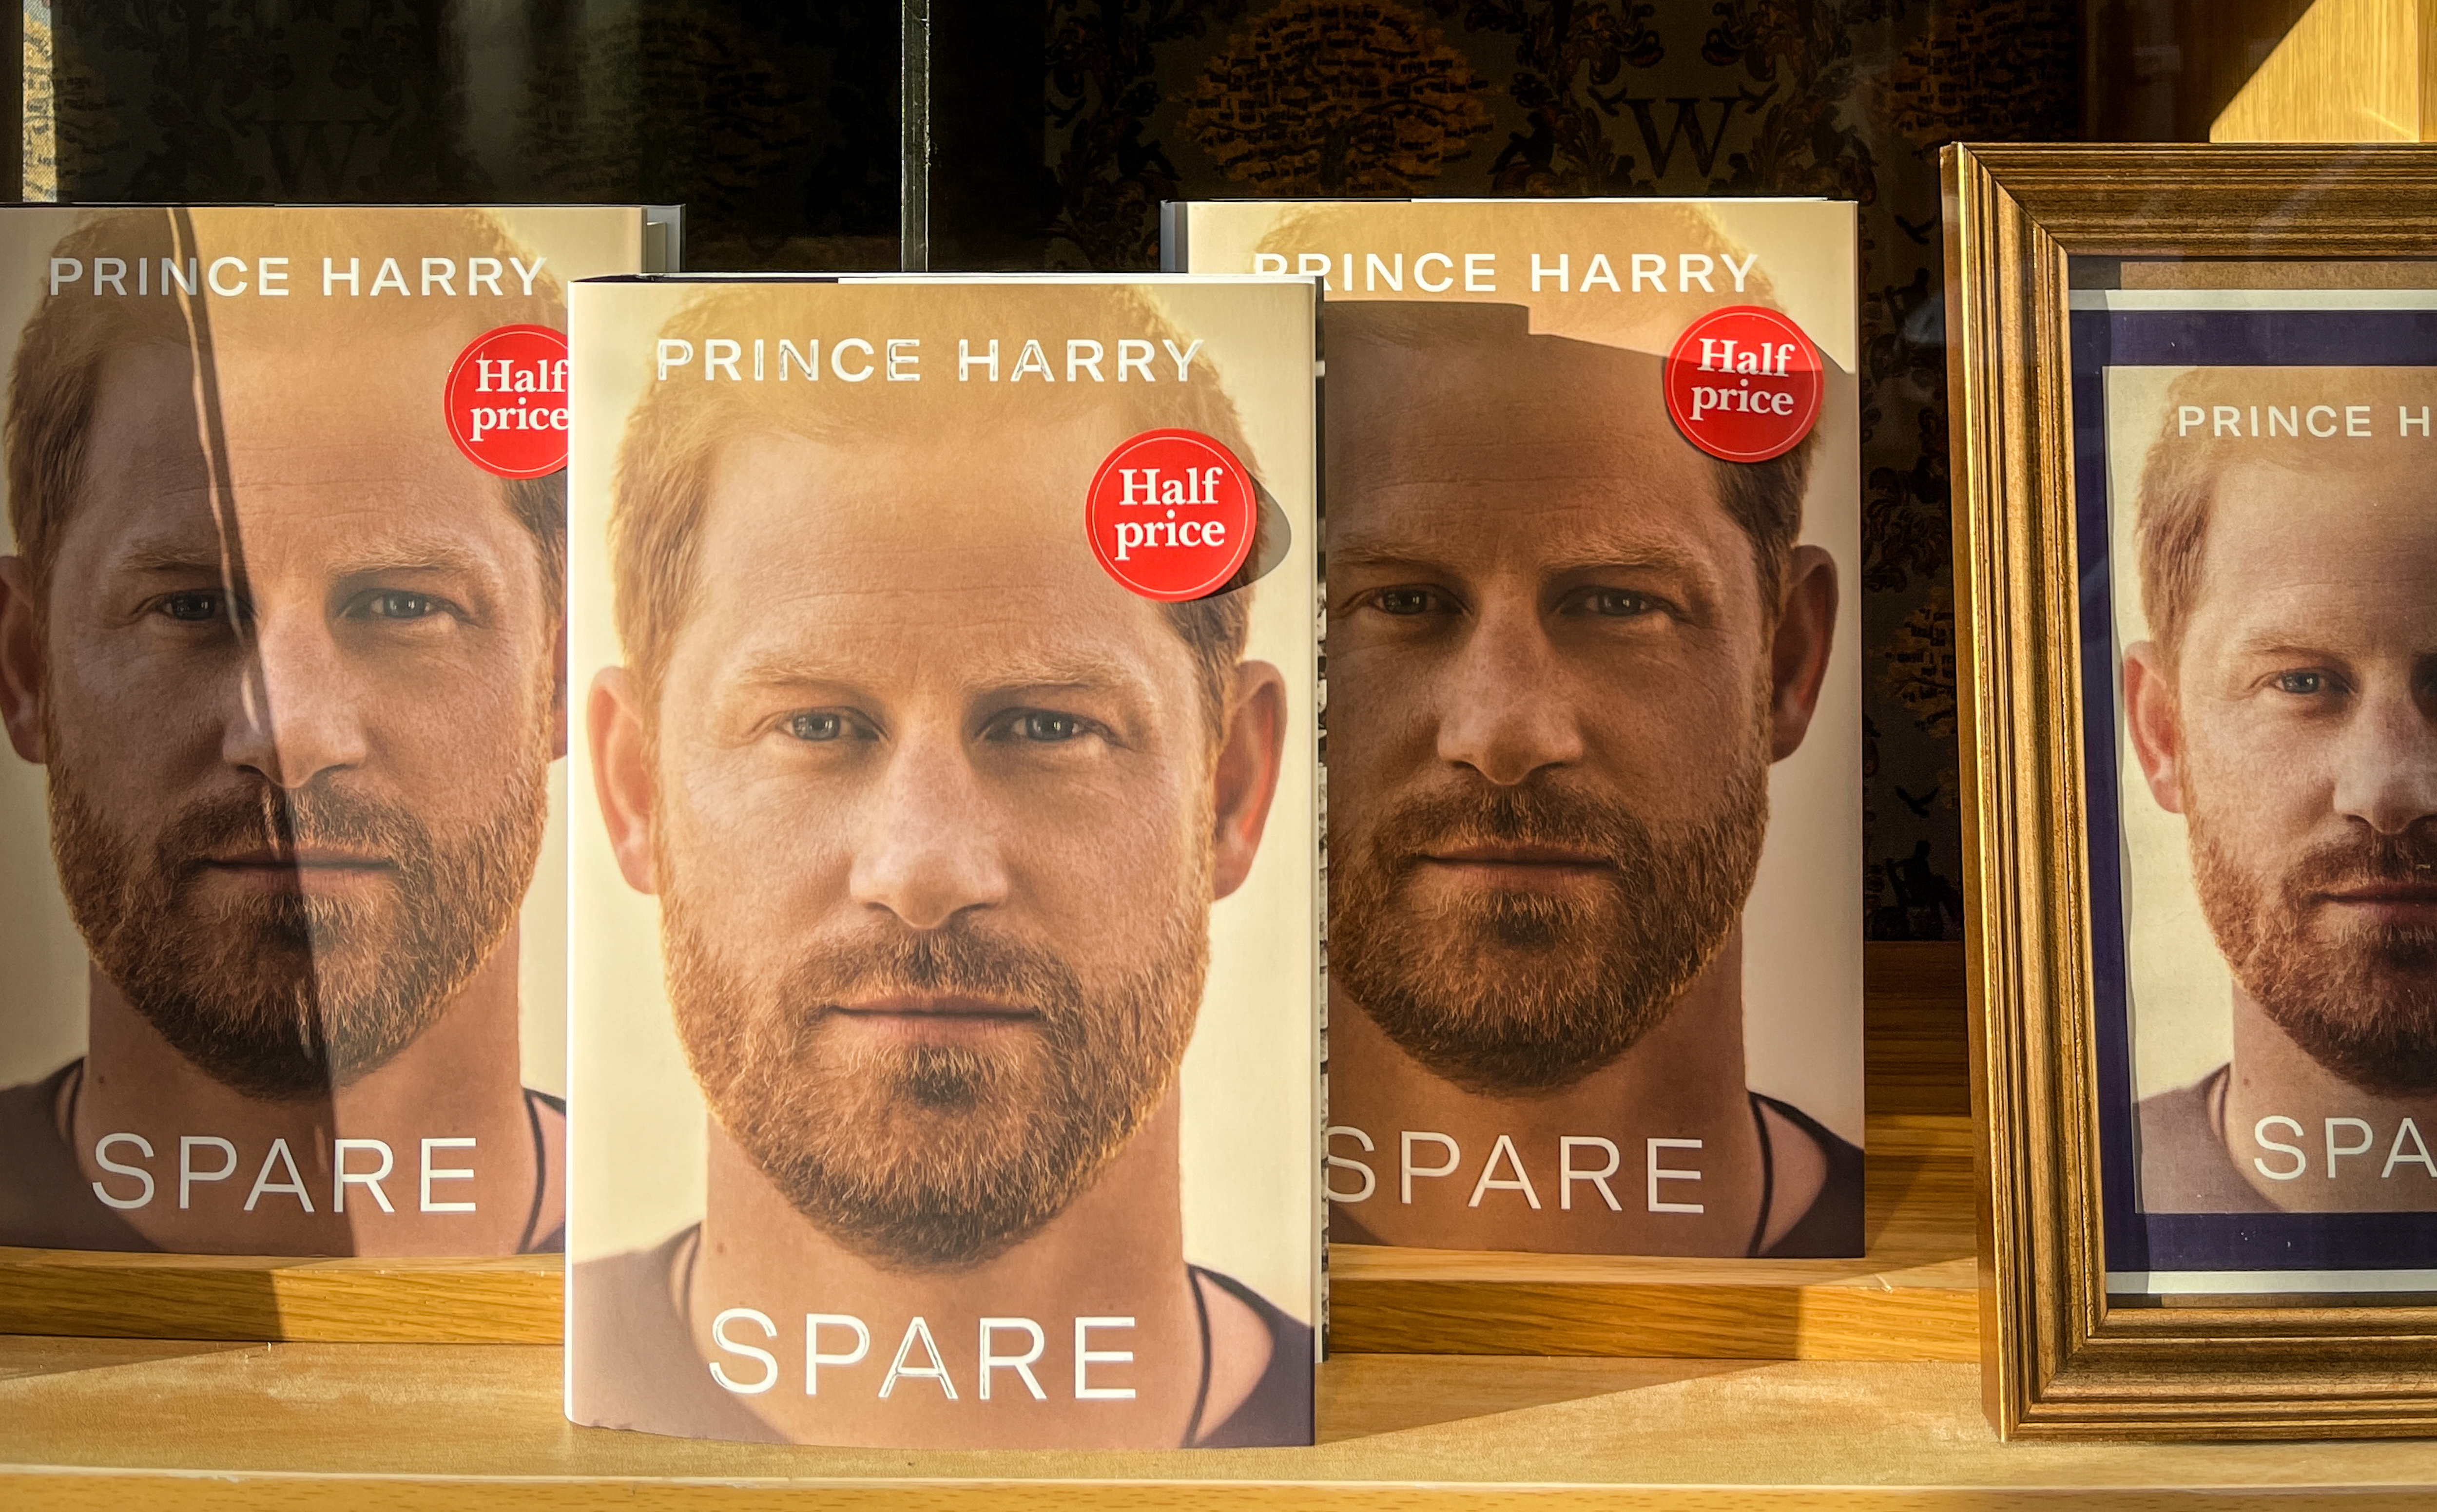 Le livre du prince Harry, "Spare", exposé dans une librairie de Bath, au Royaume-Uni, le 11 janvier 2023 | Source : Getty Images